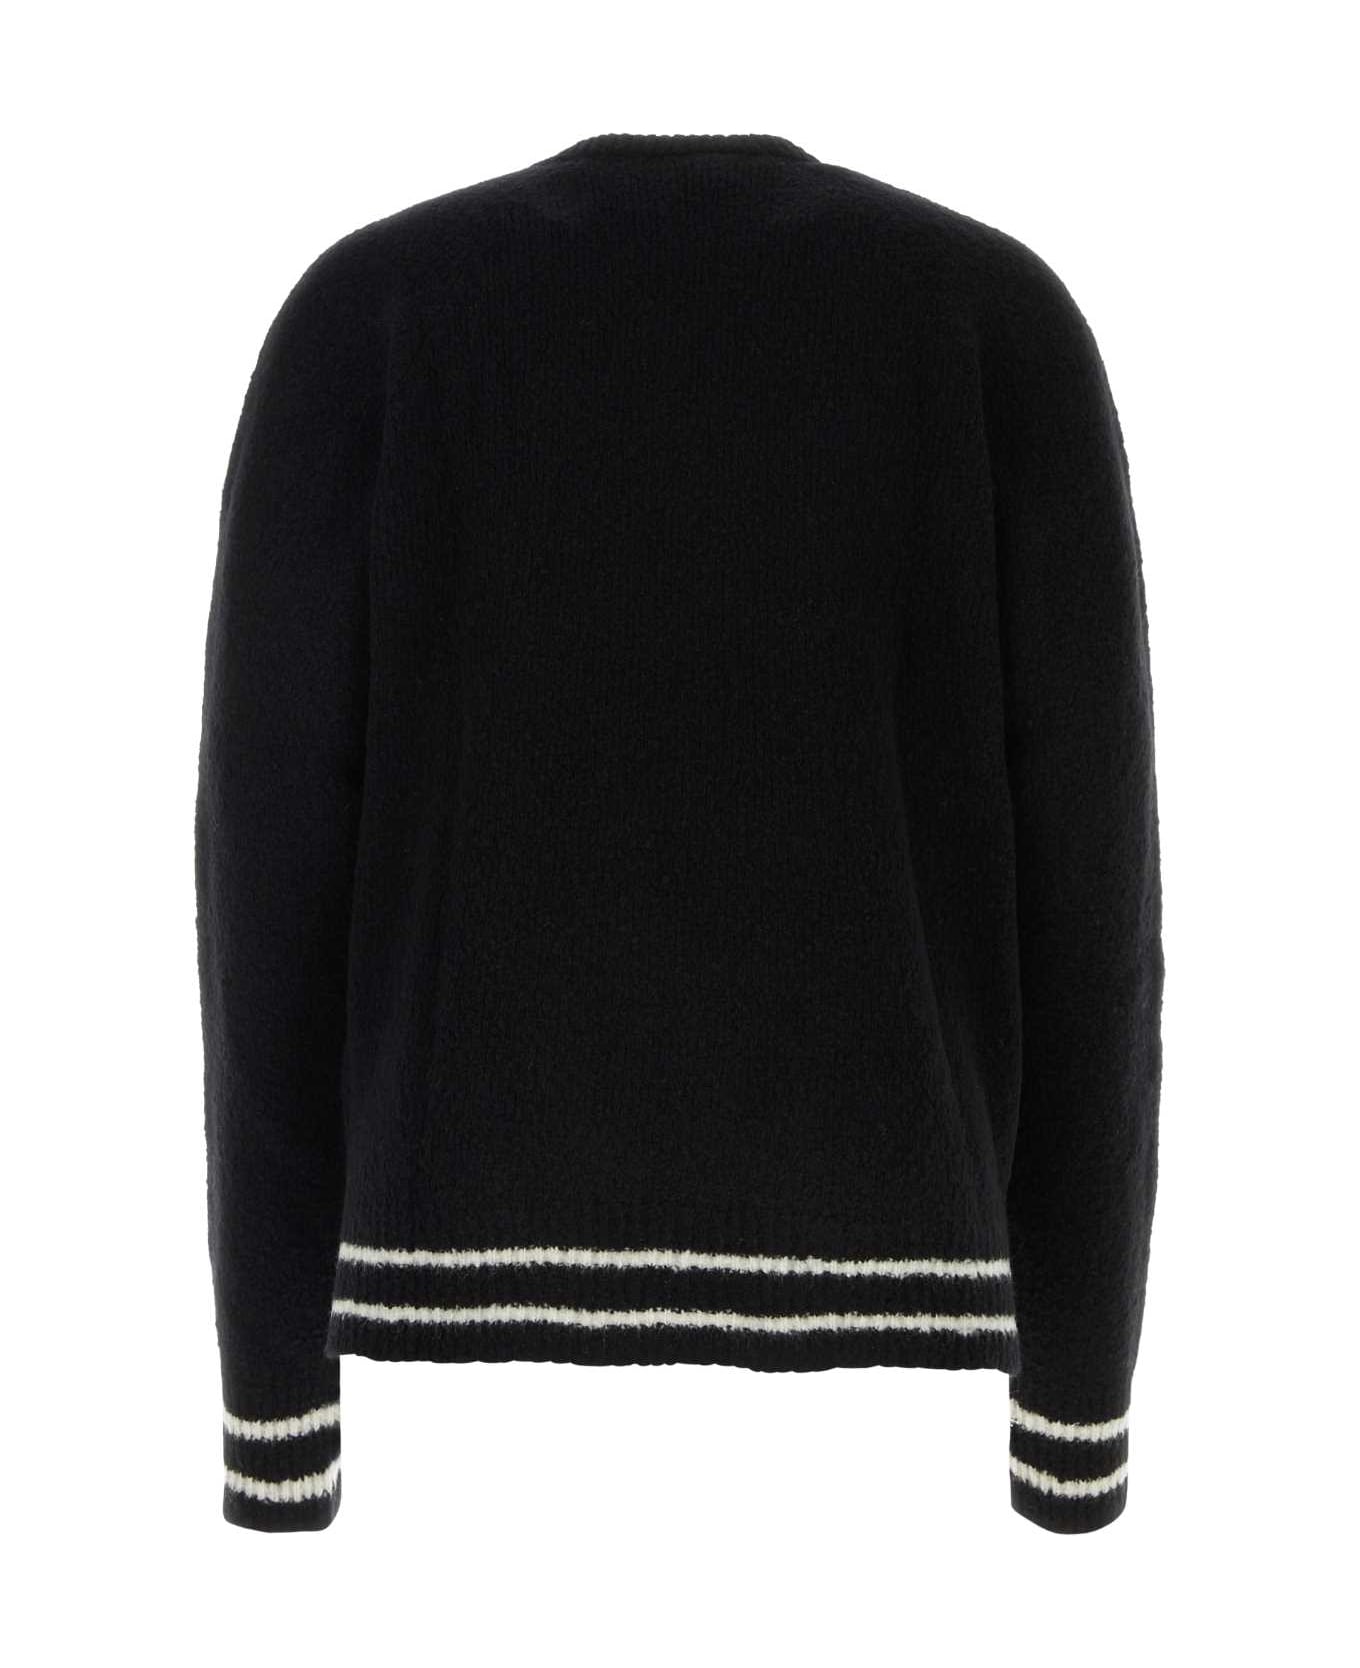 Balmain Black Wool Blend Sweater - 0PANOIR ニットウェア